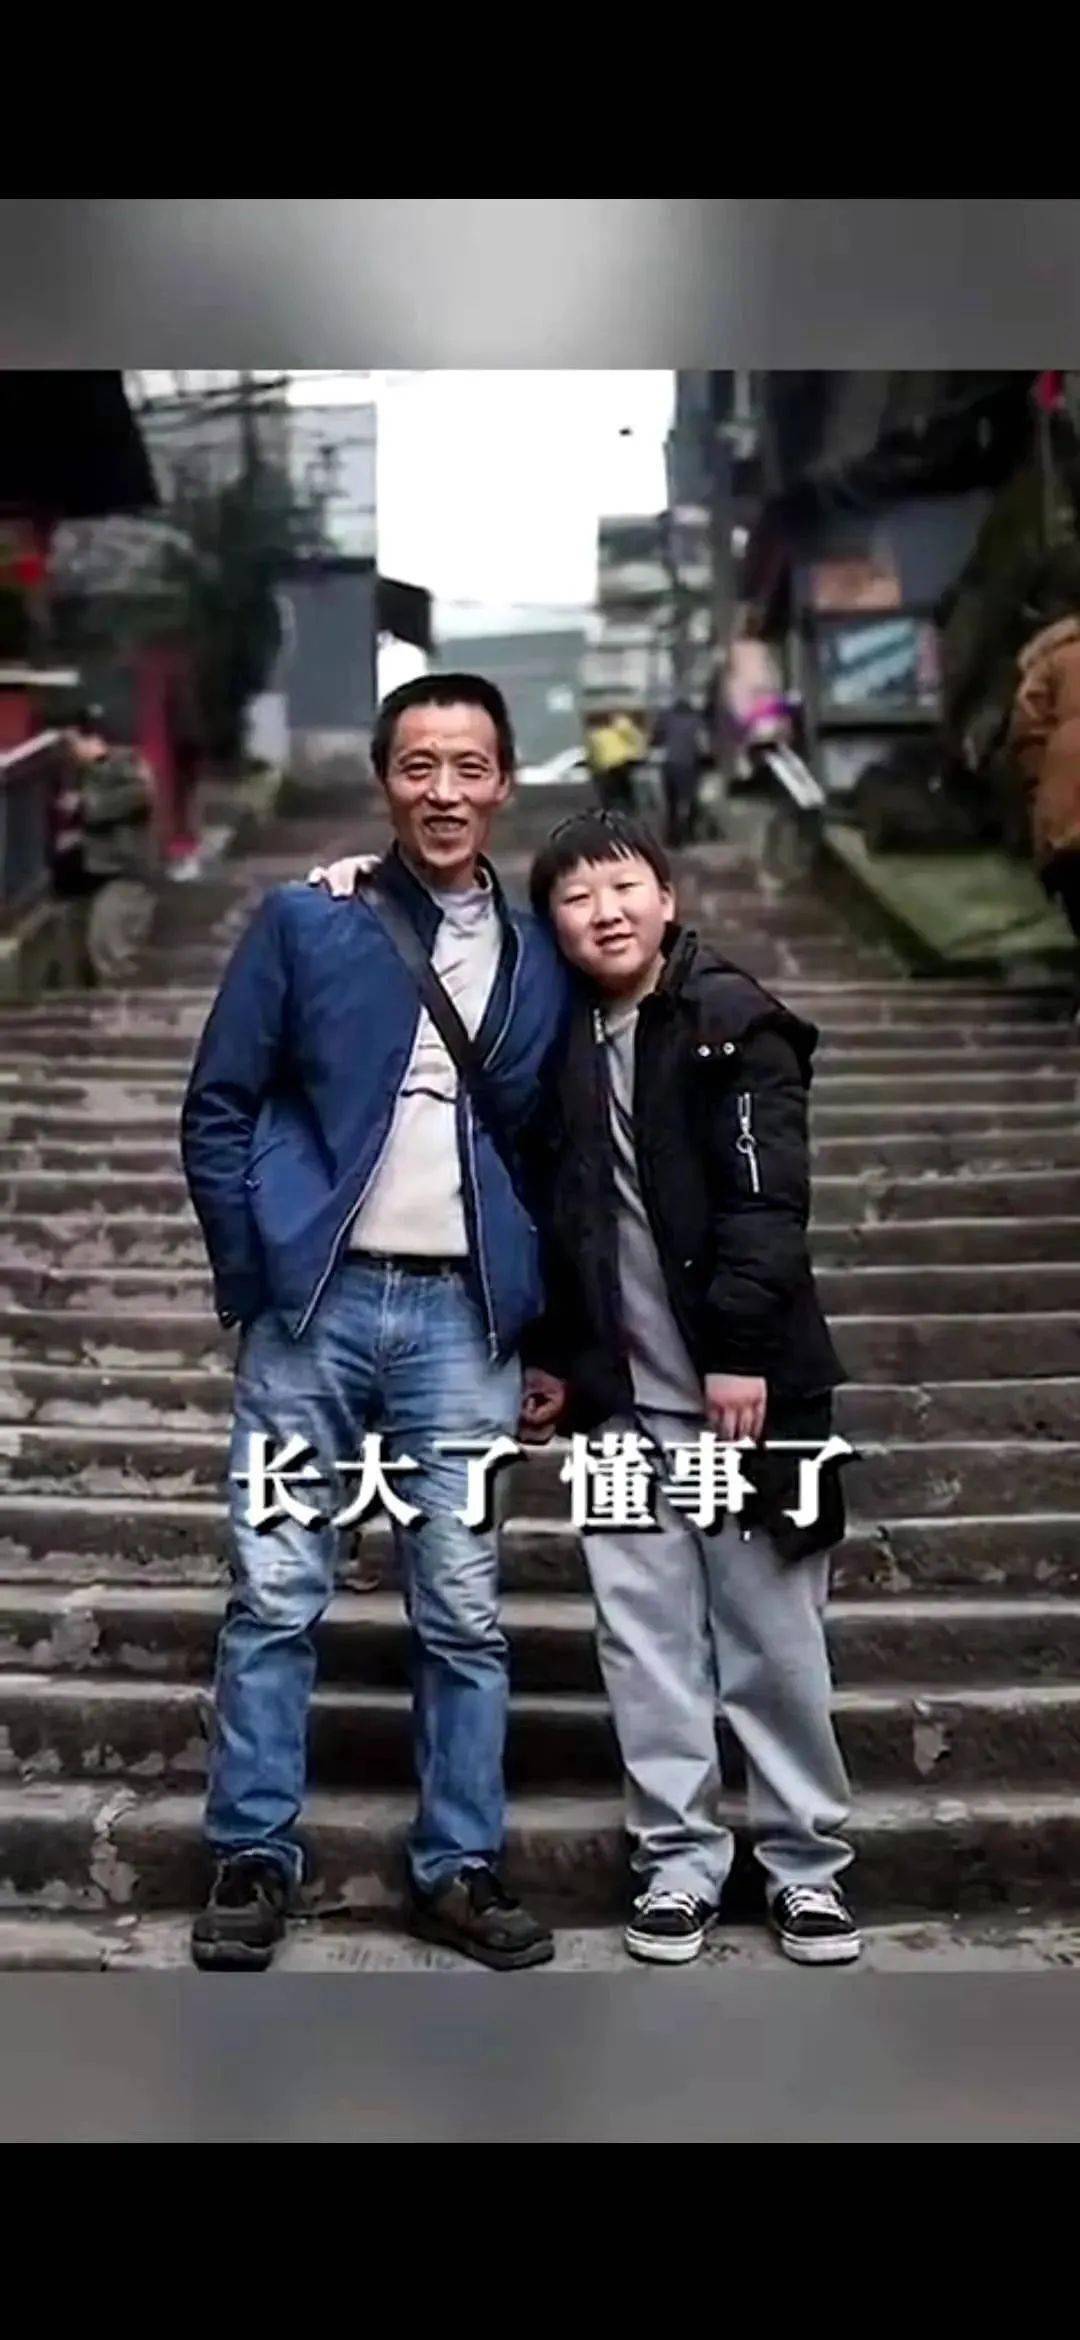 父亲用肩膀扛起家庭 10年后,儿子冉俊超长大了 主动承担起部分家务活